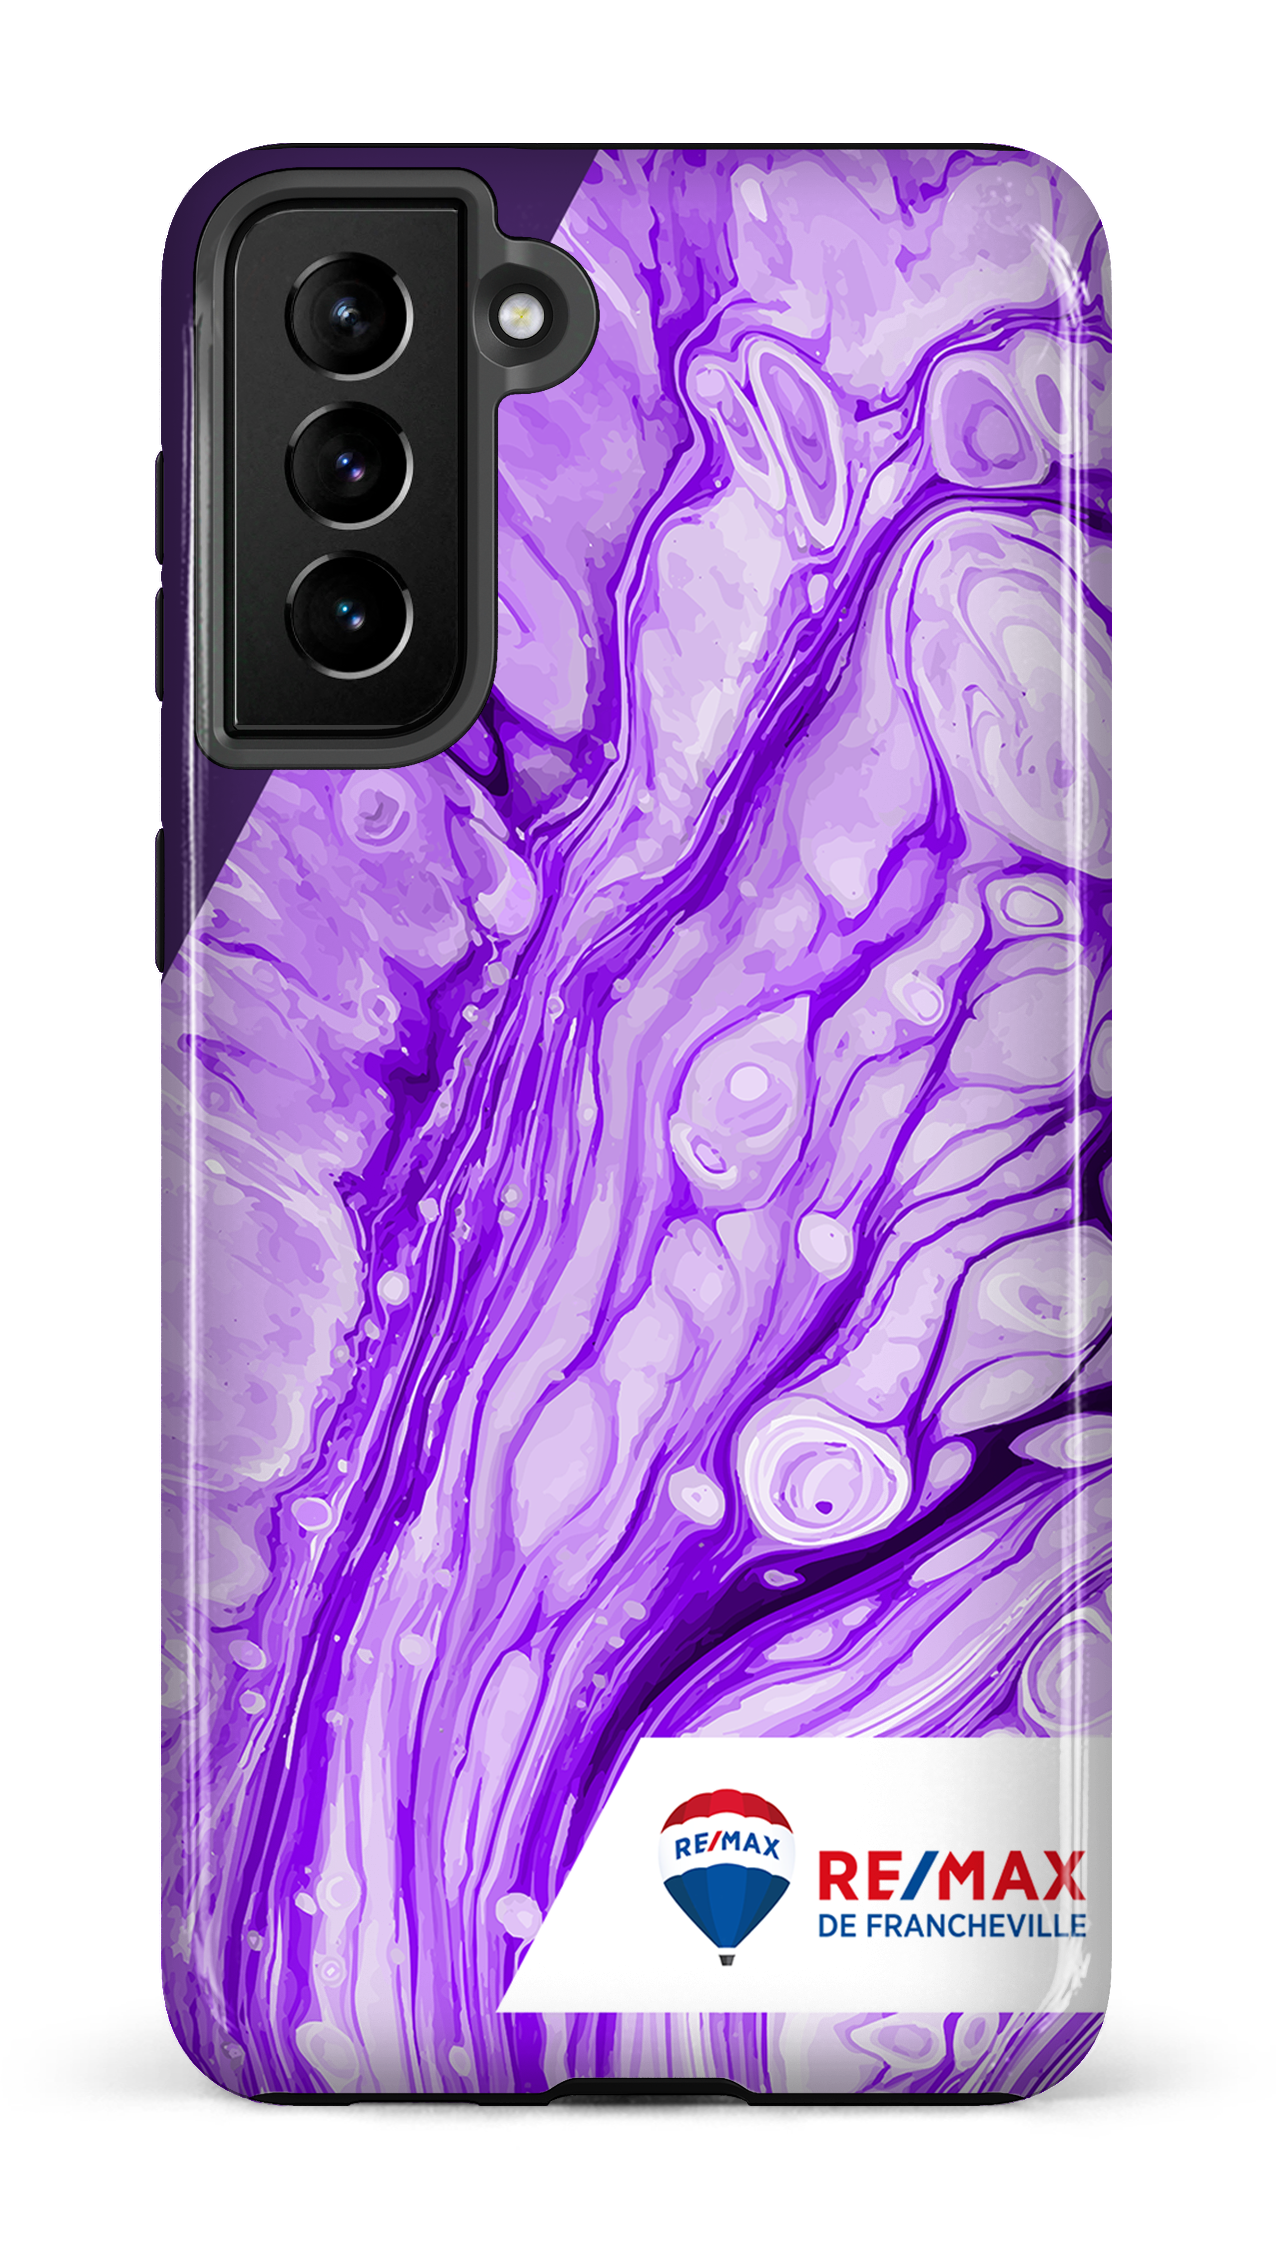 Peinture marbrée claire violette de Francheville - Galaxy S21 Plus